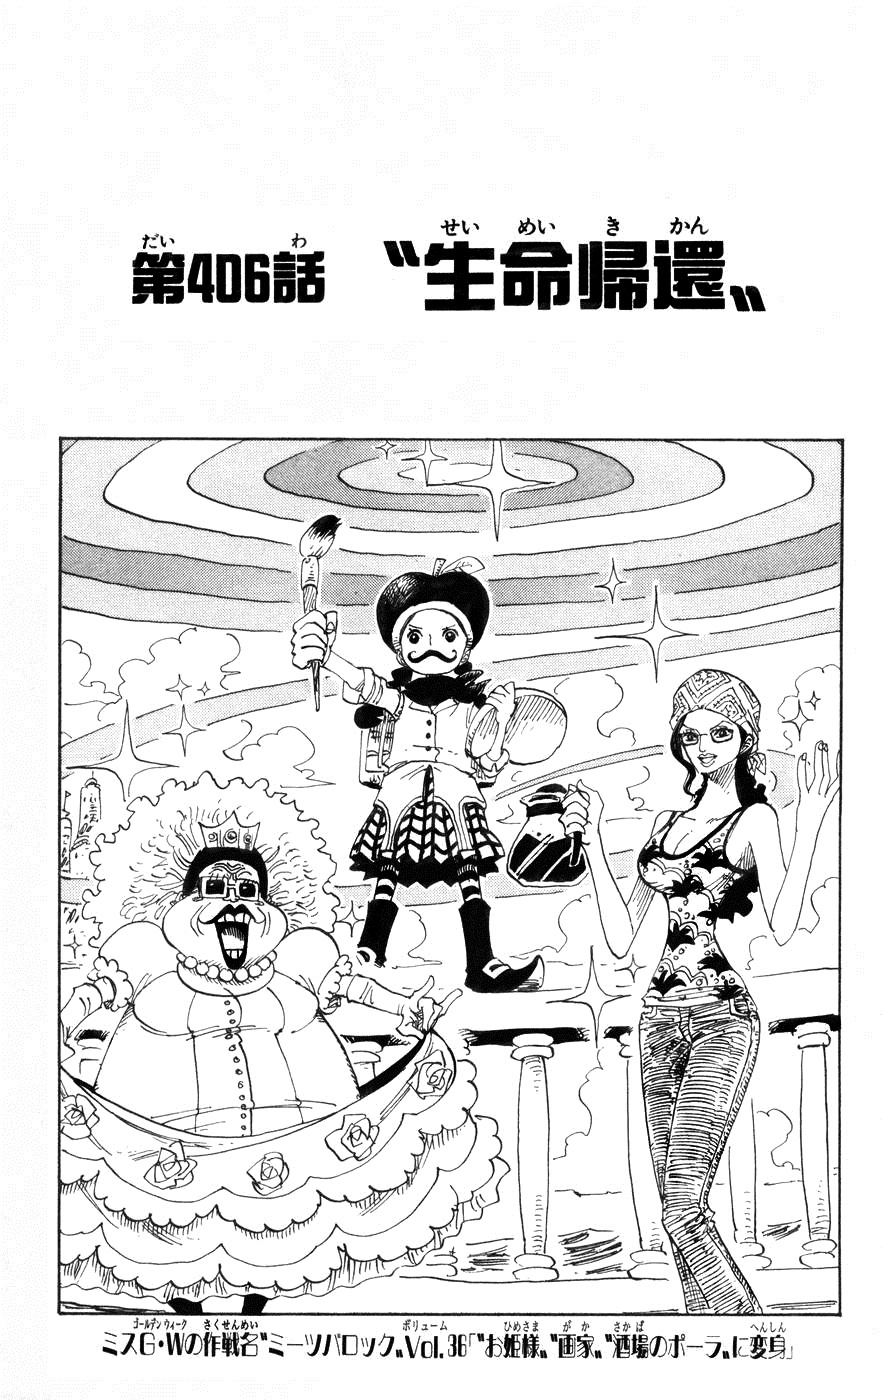 Chapitre 406 One Piece Encyclopedie Fandom